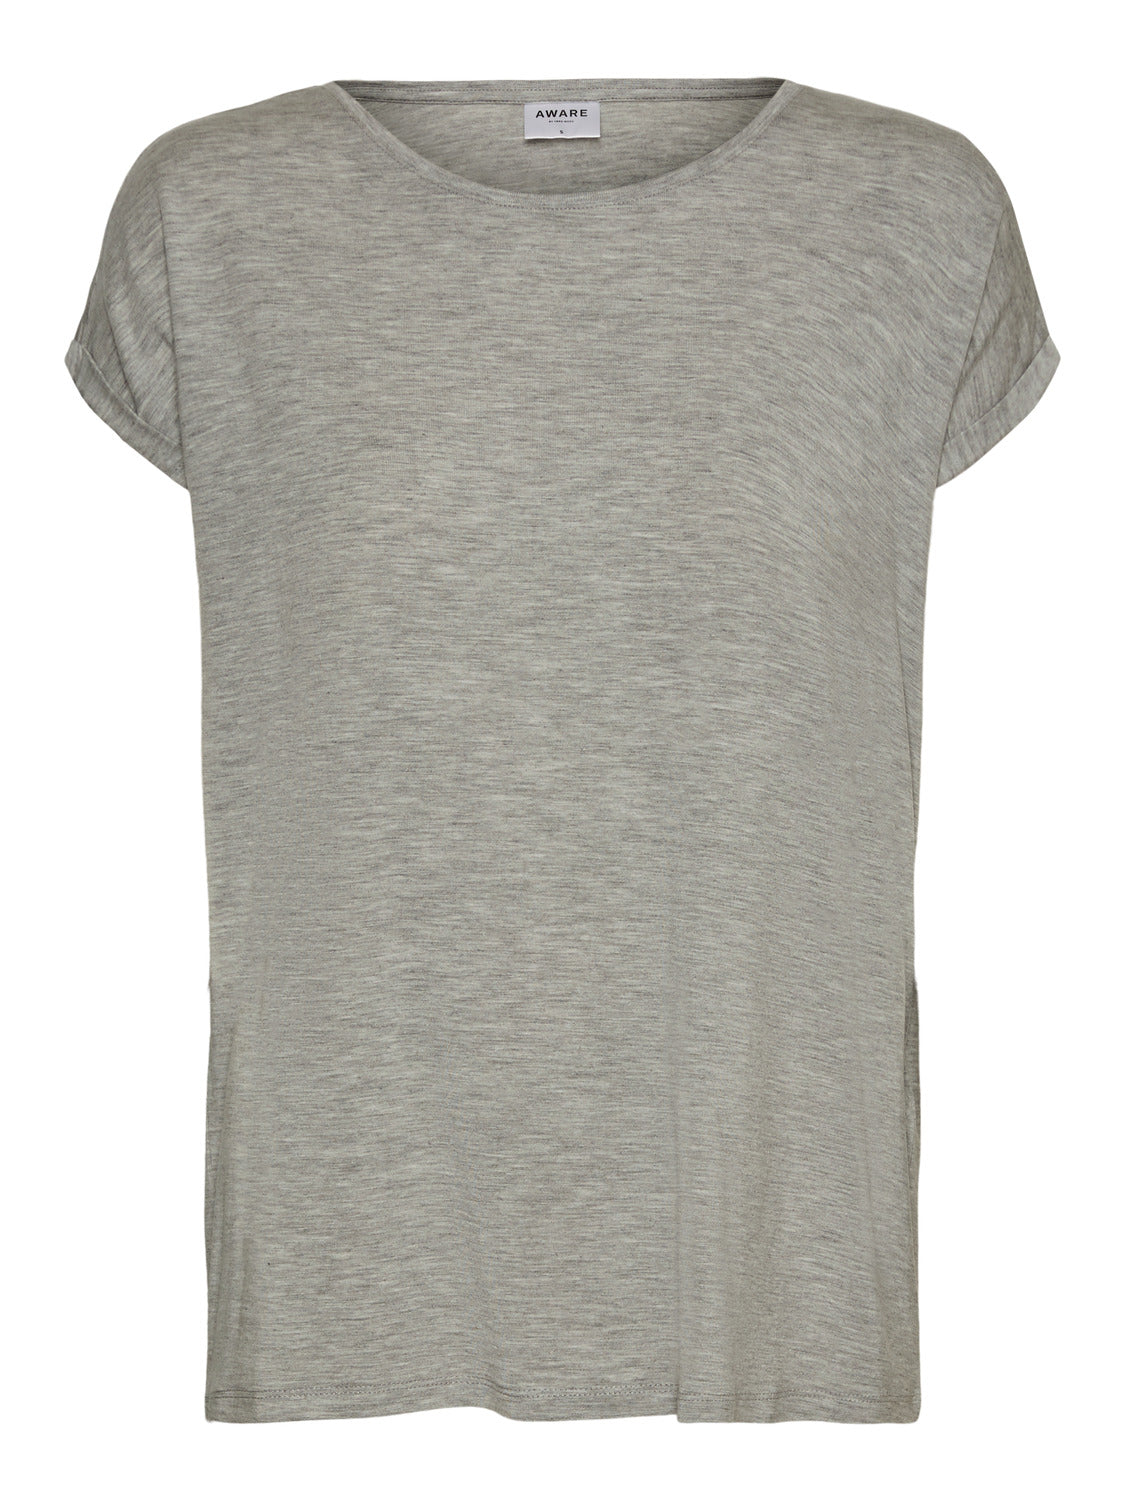 VMAVA T-Shirt - Light Grey Melange – VERO MODA Lidköping